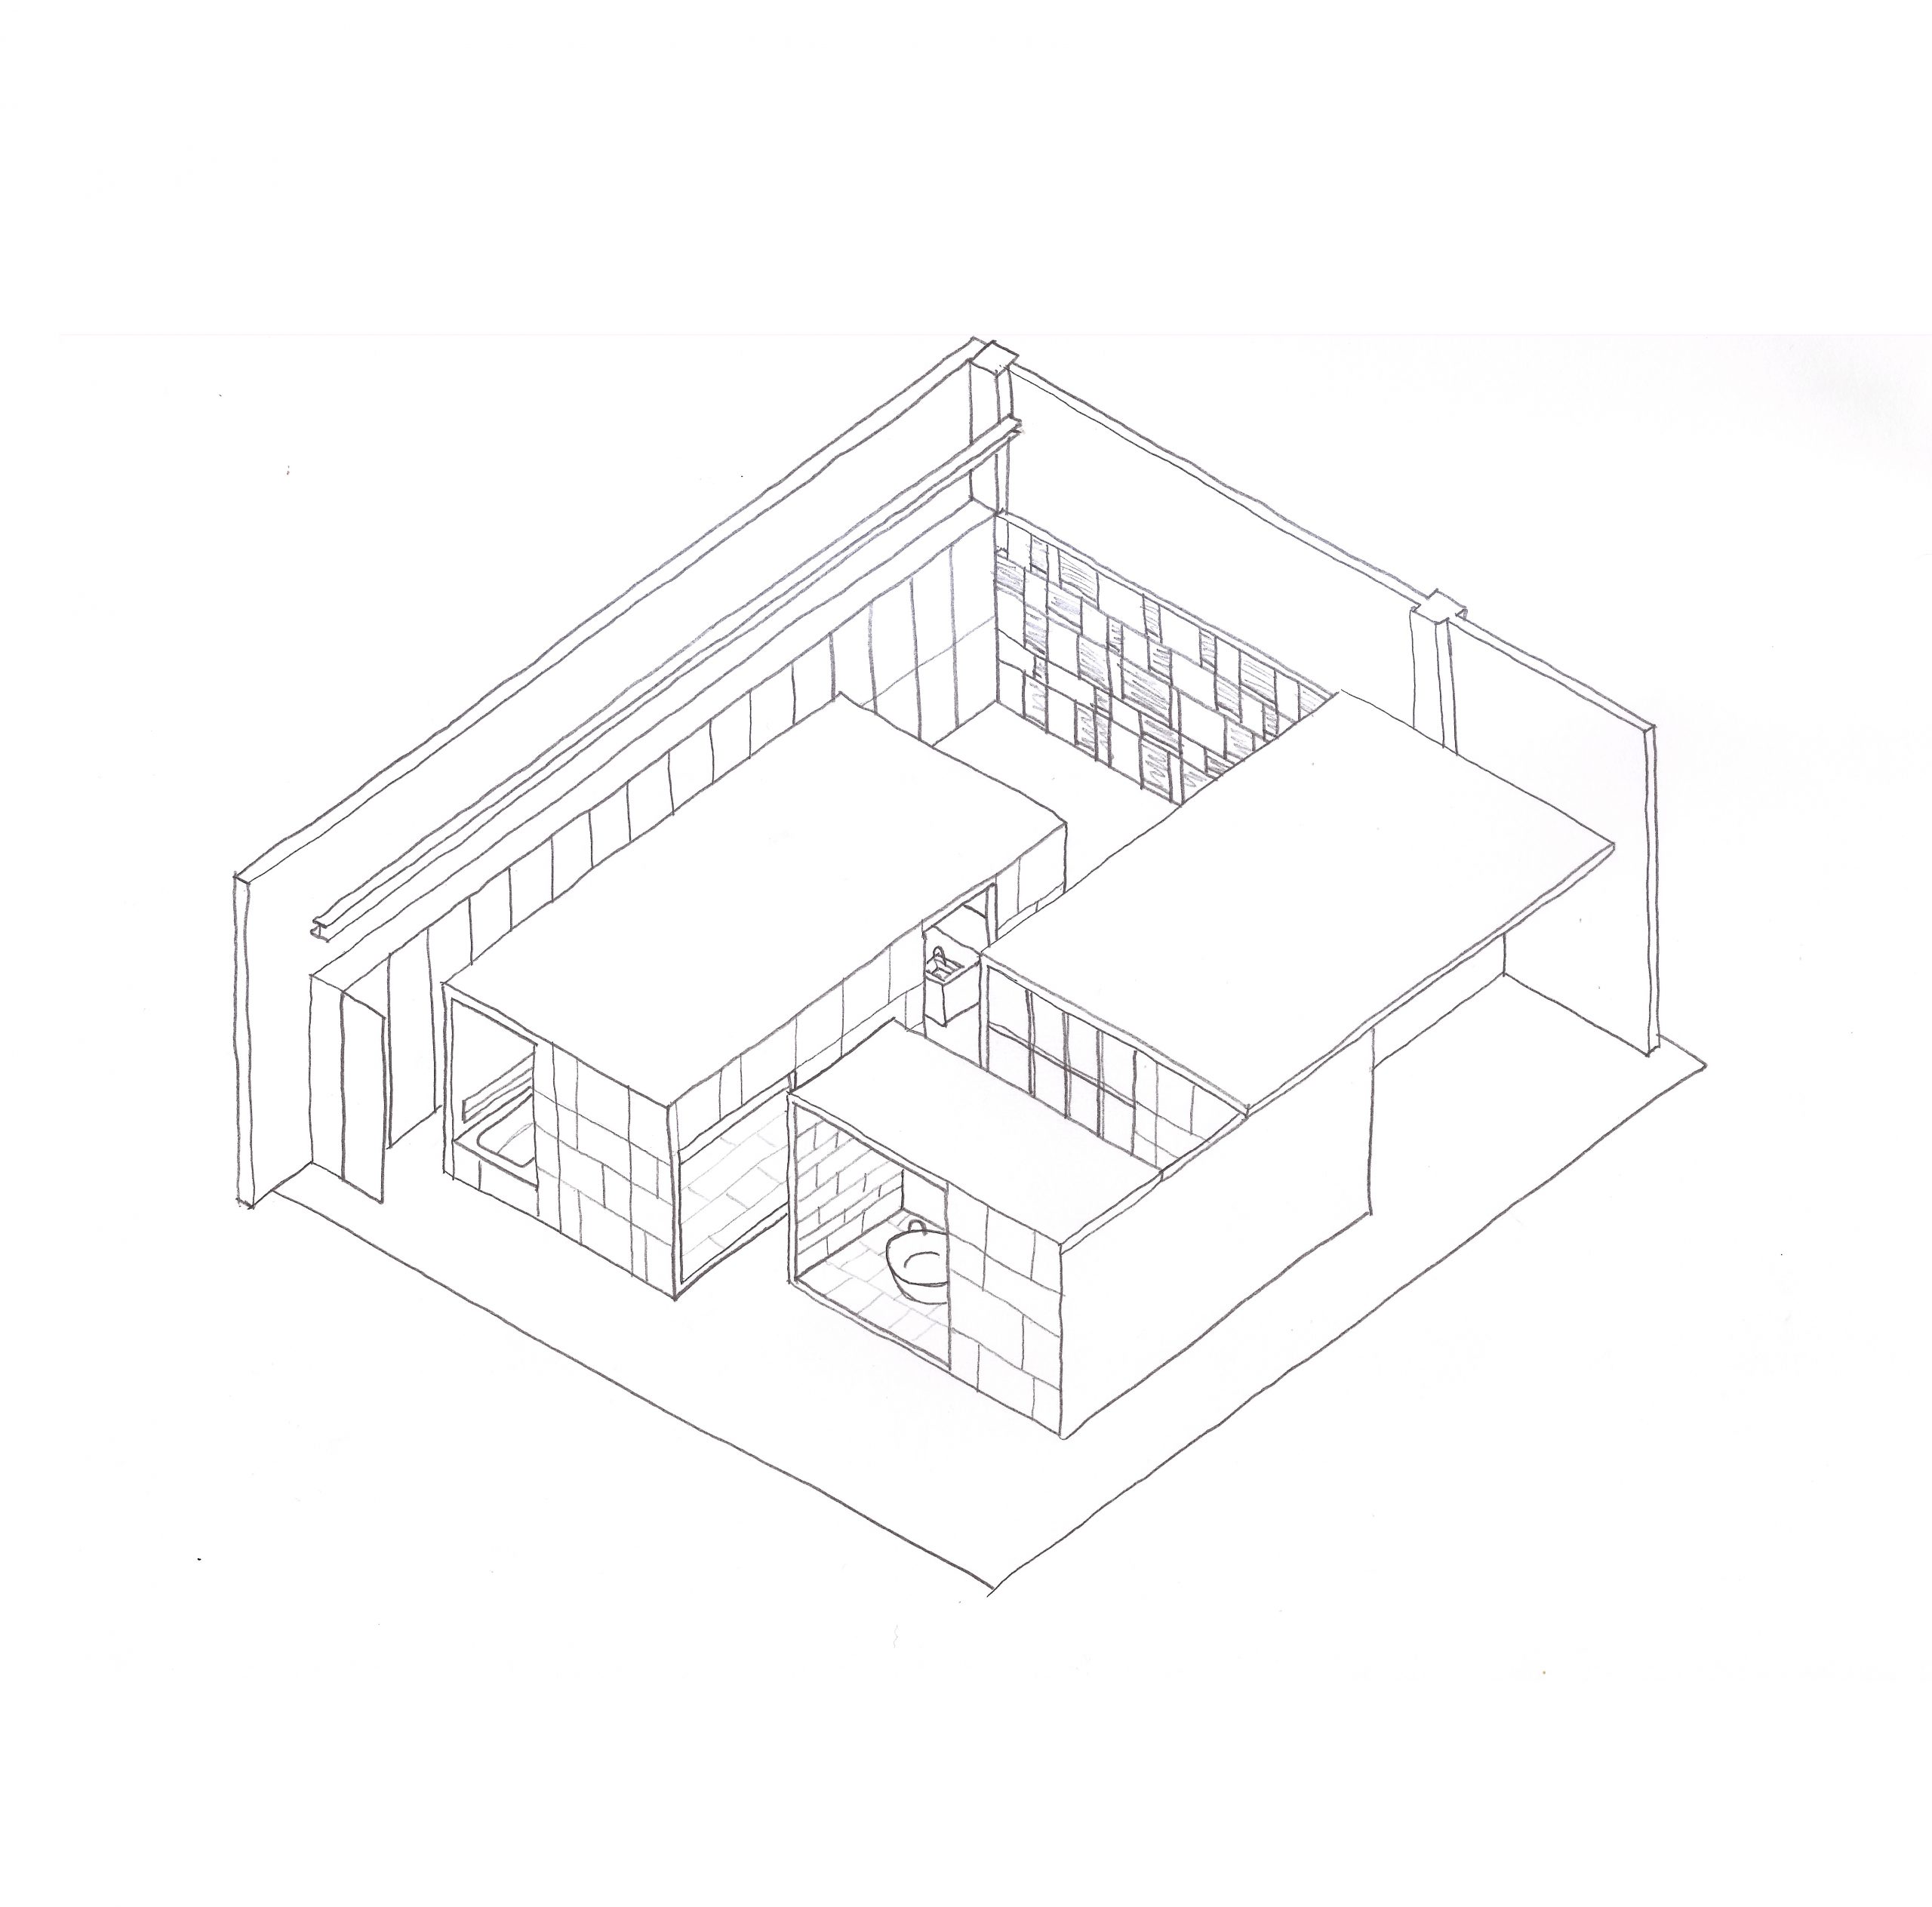 Concept sketch of Showroom Interior Design by Debiasi Sandri for Grassi Pietre